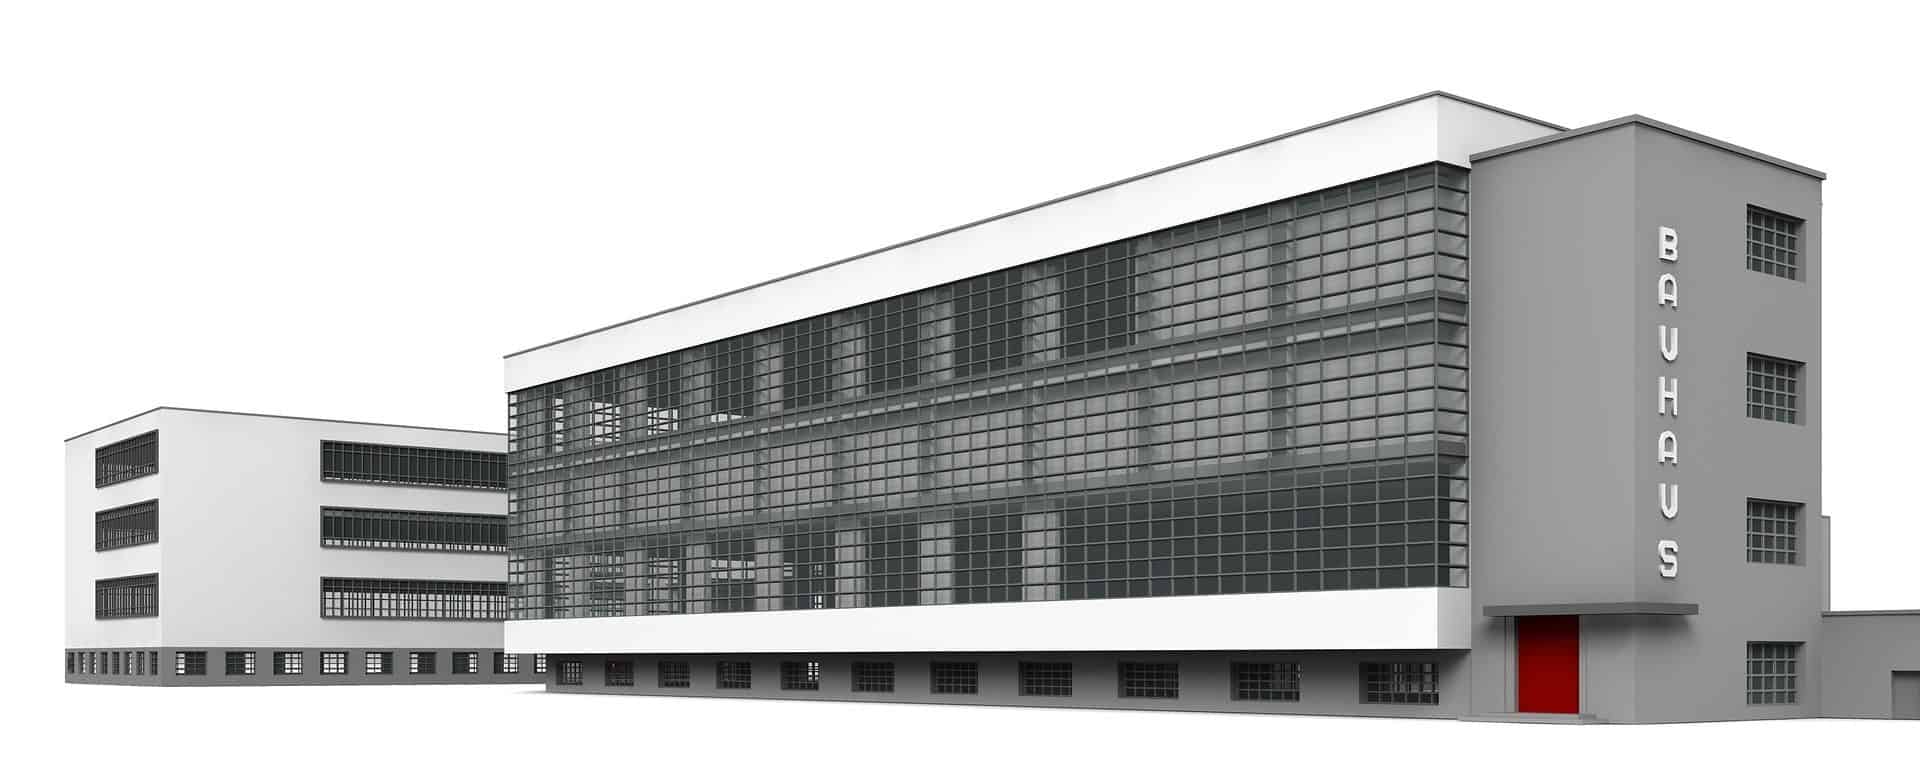 La Bauhaus en Dessau, Alemania, edificios modernos